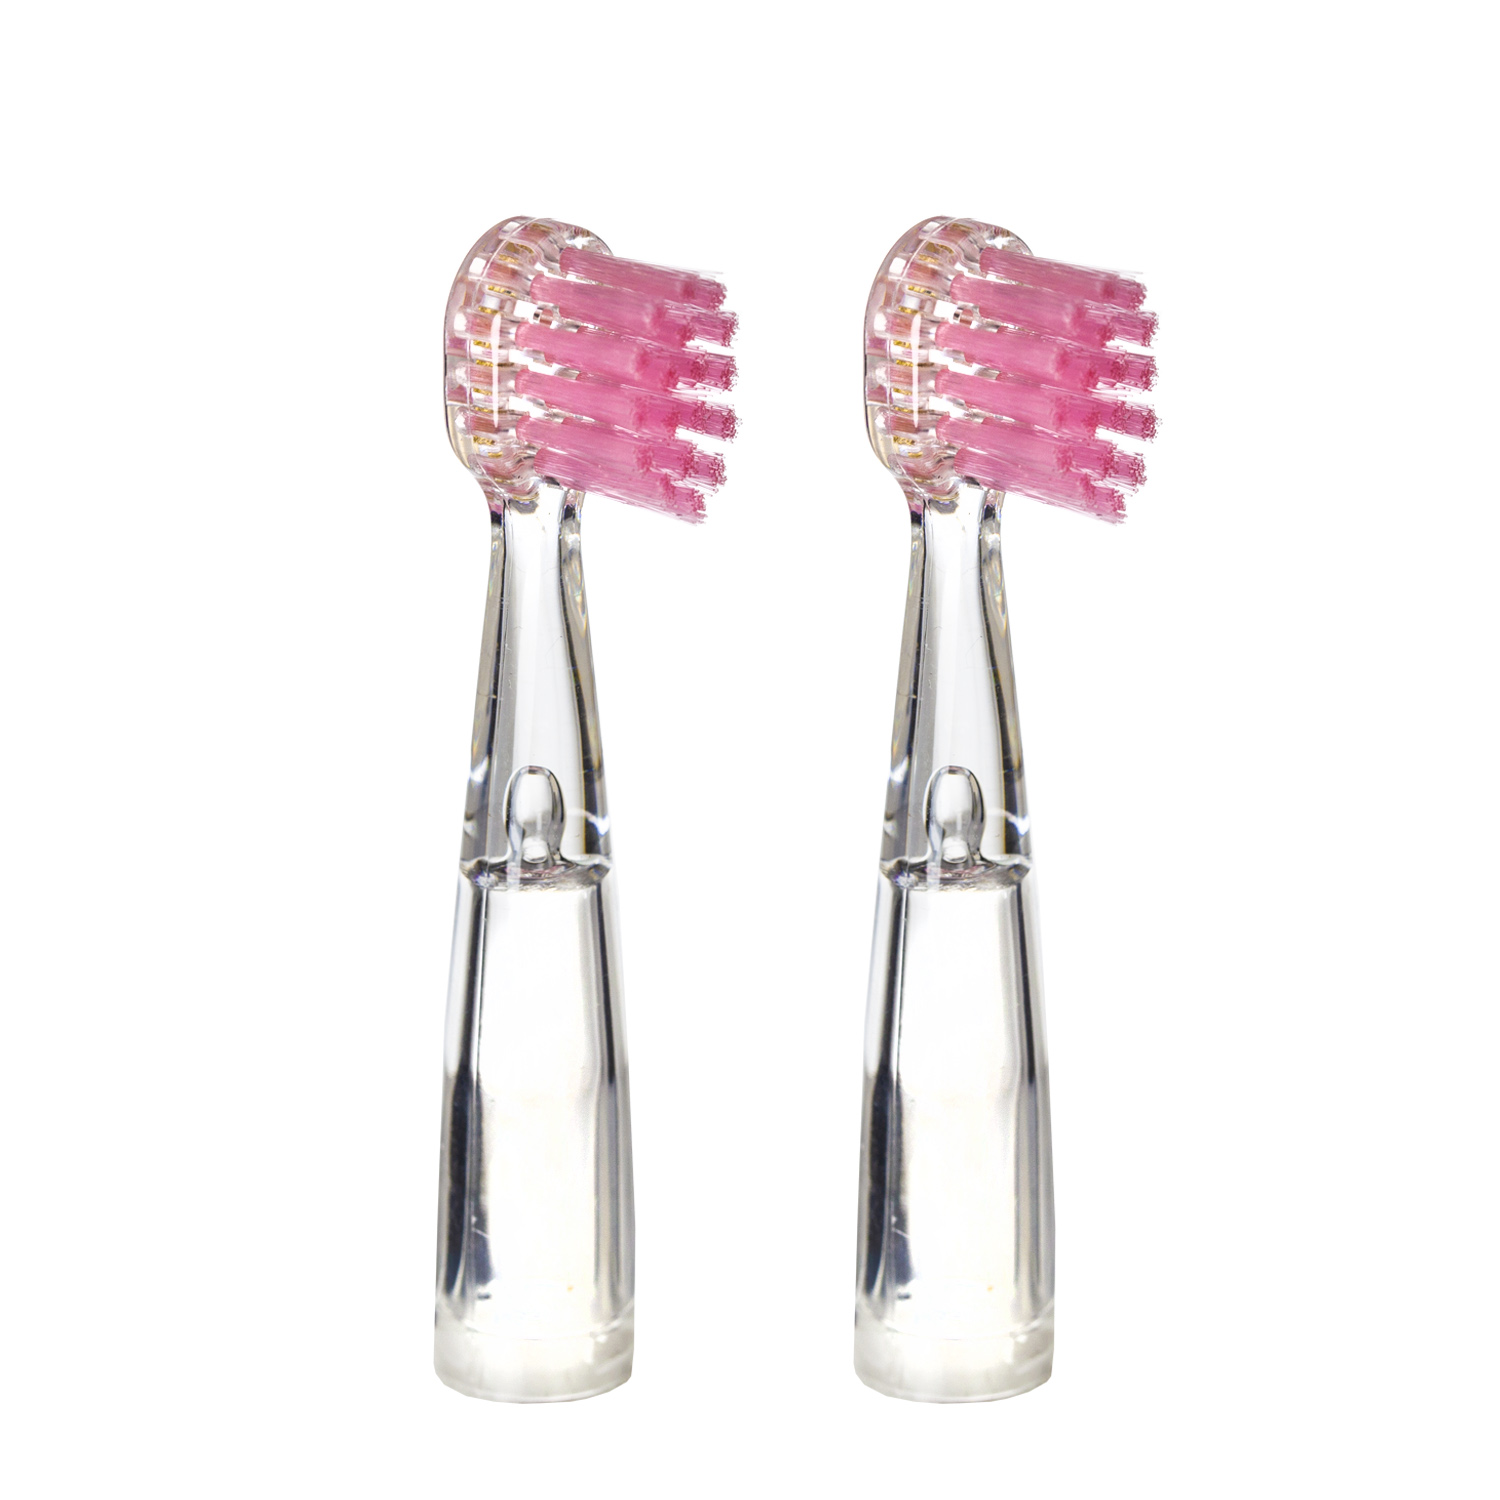 Насадка для детской электрической зубной щетки Revyline RL 025, розовая, 2 шт., 6171 насадки luazon lp 007 для электрической зубной щетки oral b 4 шт в наборе